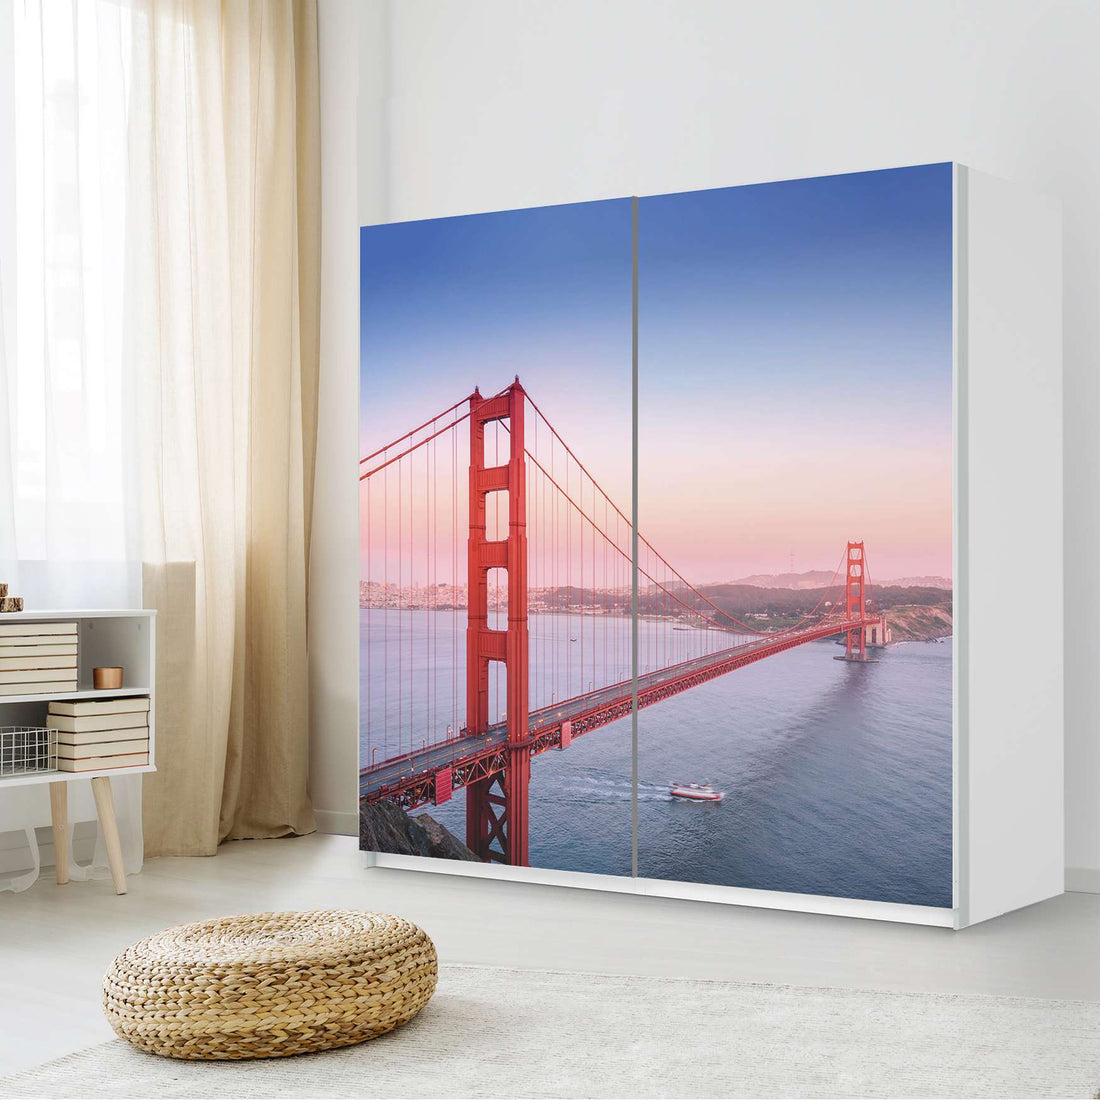 Möbel Klebefolie Golden Gate - IKEA Pax Schrank 201 cm Höhe - Schiebetür - Schlafzimmer